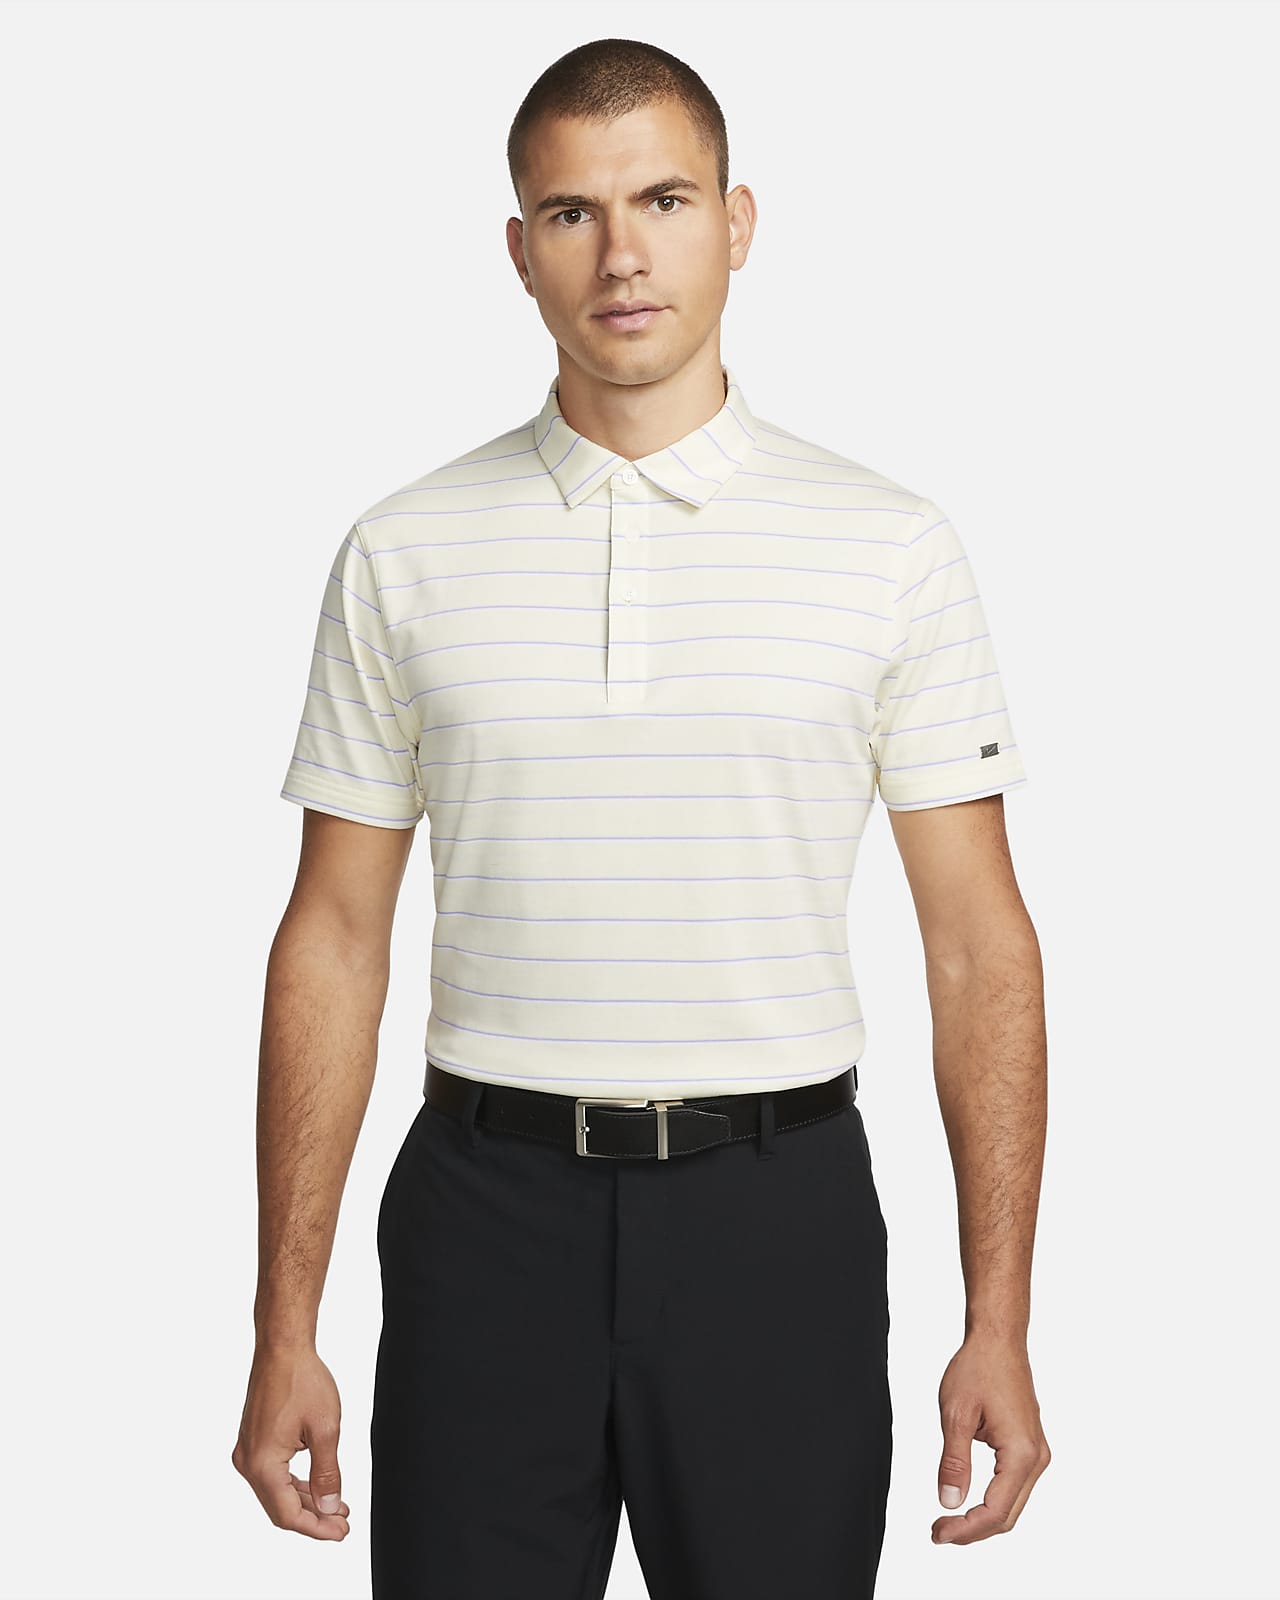 Nike Dri-FIT Player Men's Striped Golf Polo